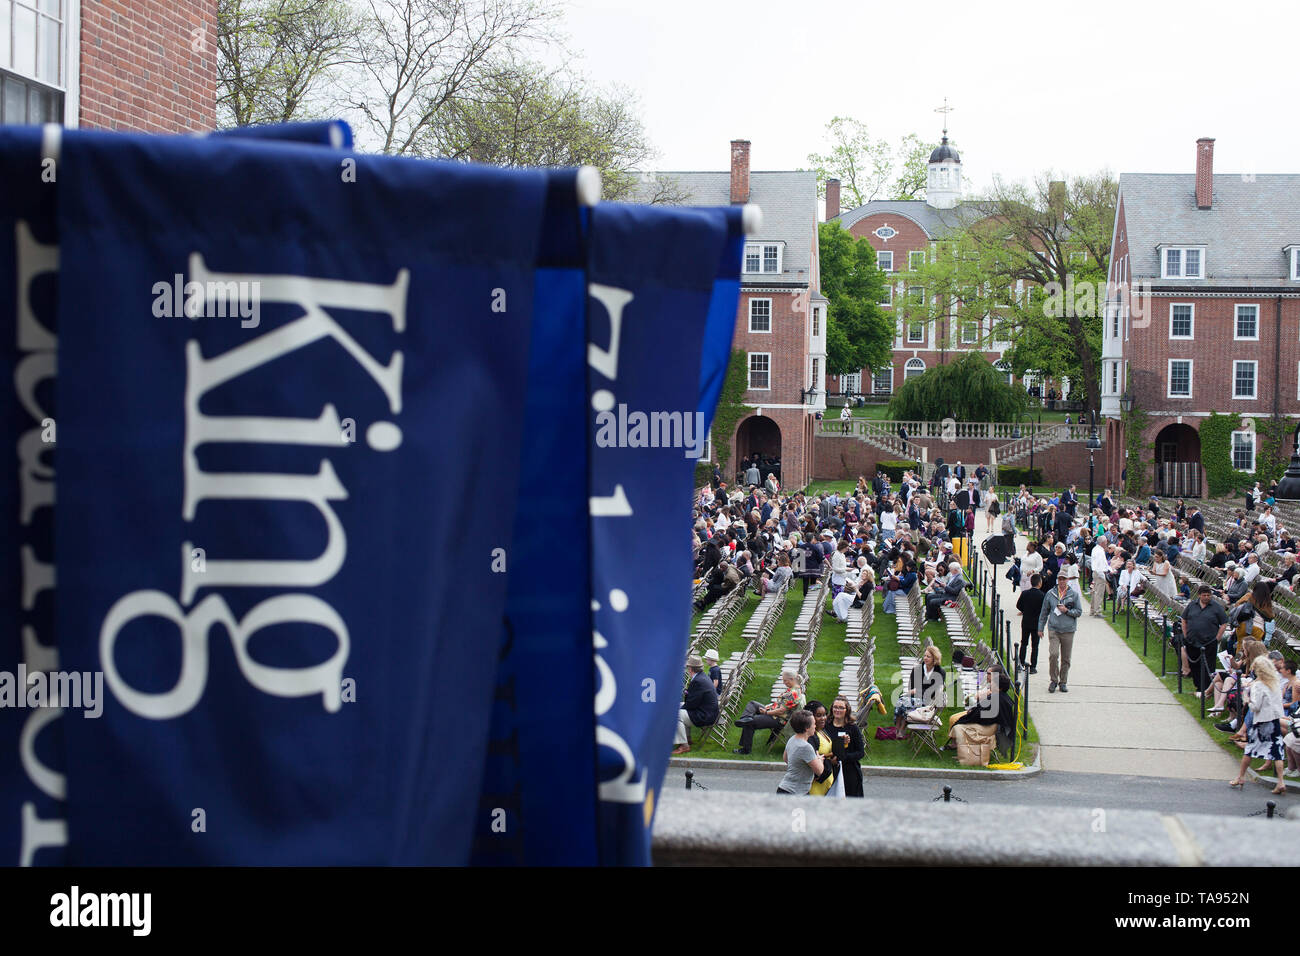 Striscioni con i nomi delle case attendono processione per la laurea al Smith College a Northampton, Massachusetts. Foto Stock